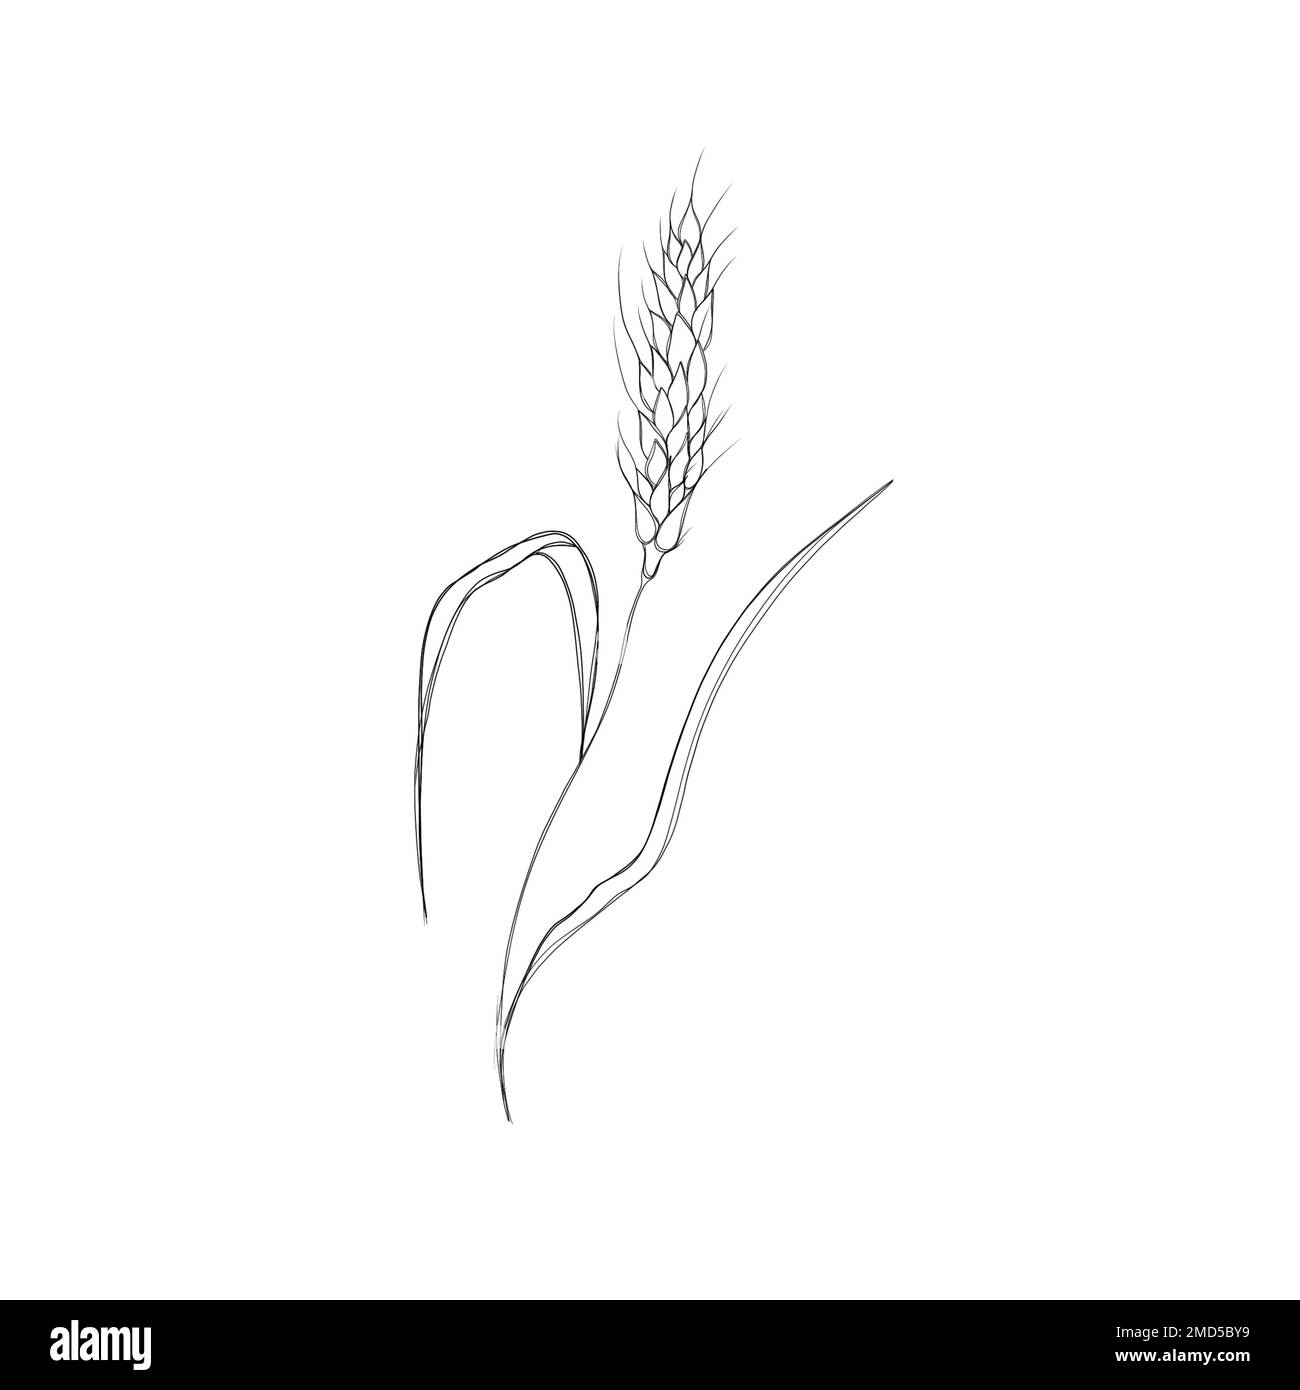 Stacheln aus Weizen in der Skizzendarstellung isoliert auf weißem Hintergrund. Glutenhaltige landwirtschaftliche Nutzpflanzen. Stockfoto